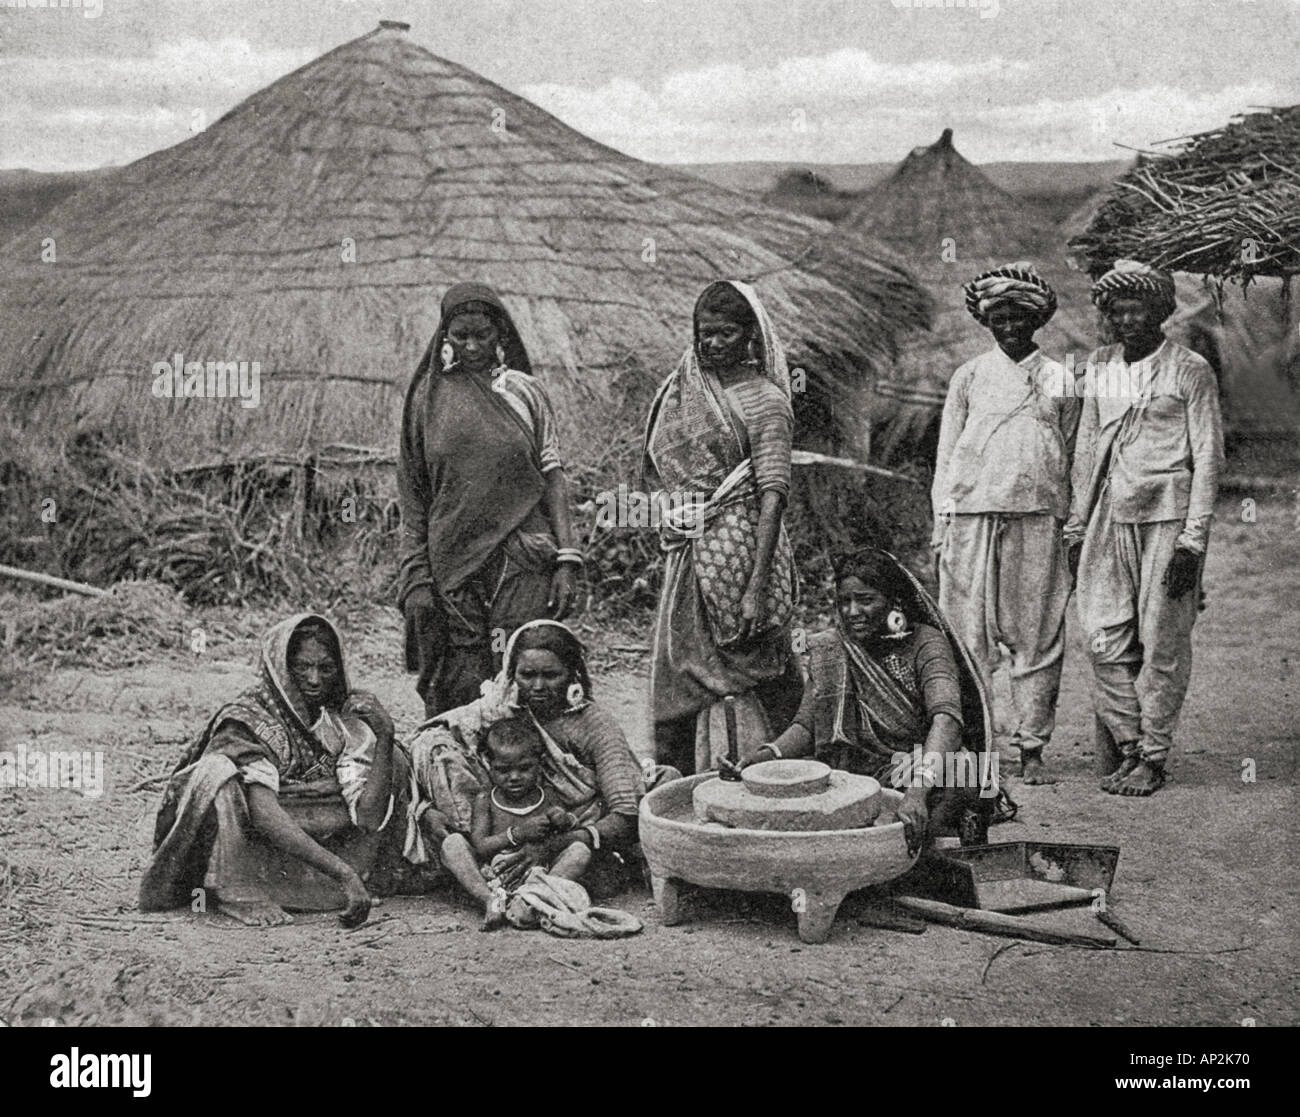 Bhil Tribe tribal hommes femmes enfants du Gujarat avec pierre de meulage devant le toit de chaume hutte Inde Asie ancienne image vintage 1900s Banque D'Images